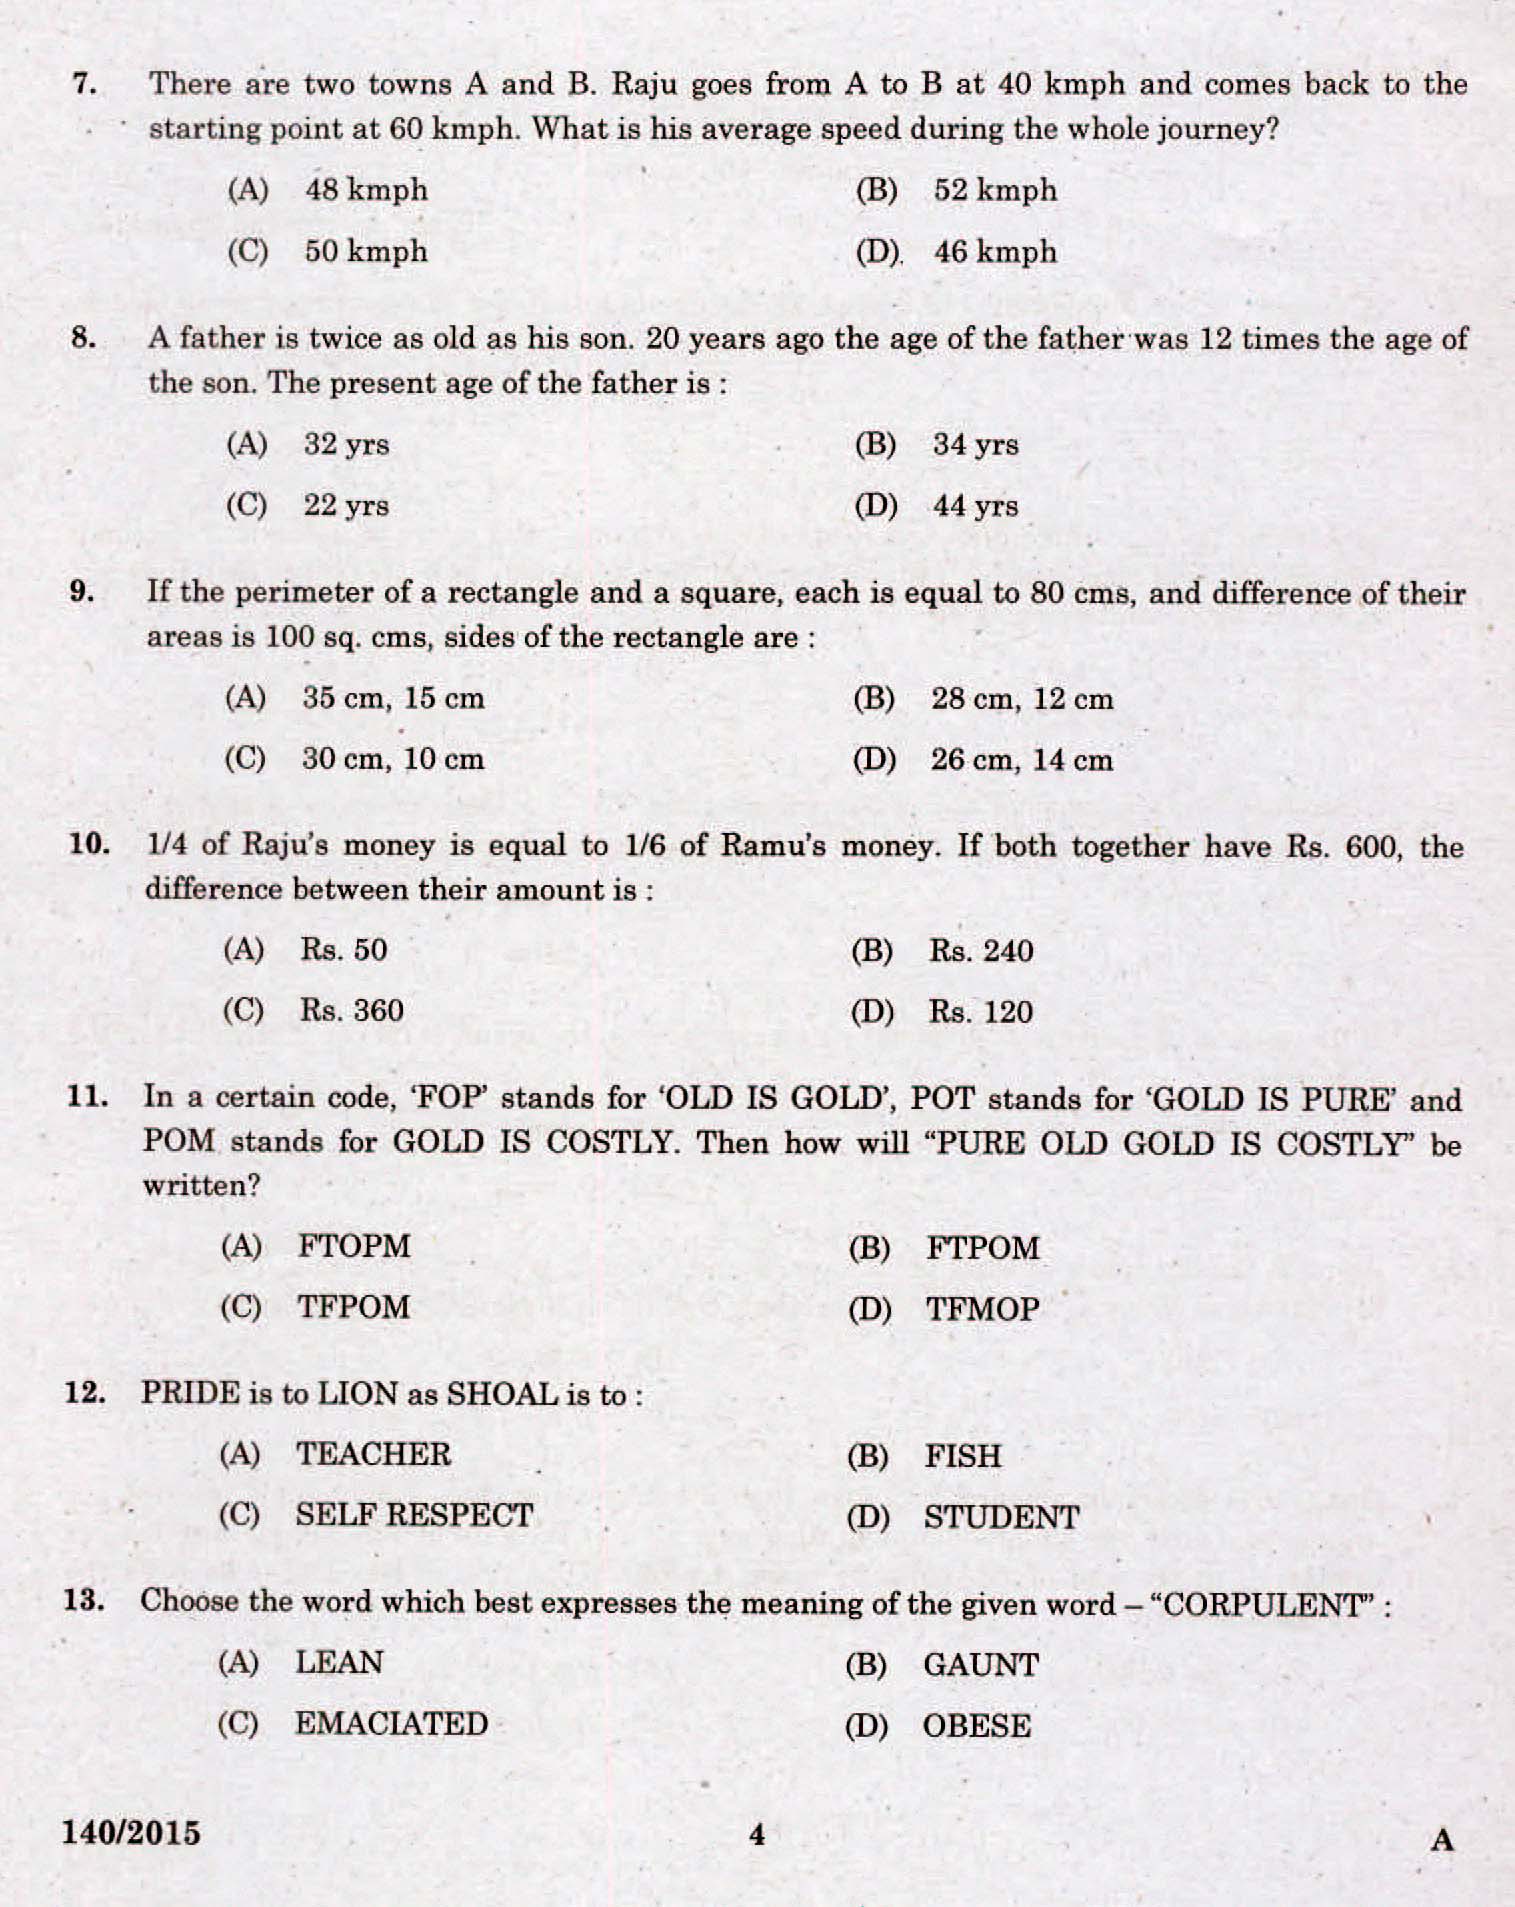 Kerala PSC Assistant Grade II Exam 2015 Question Paper Code 1402015 2